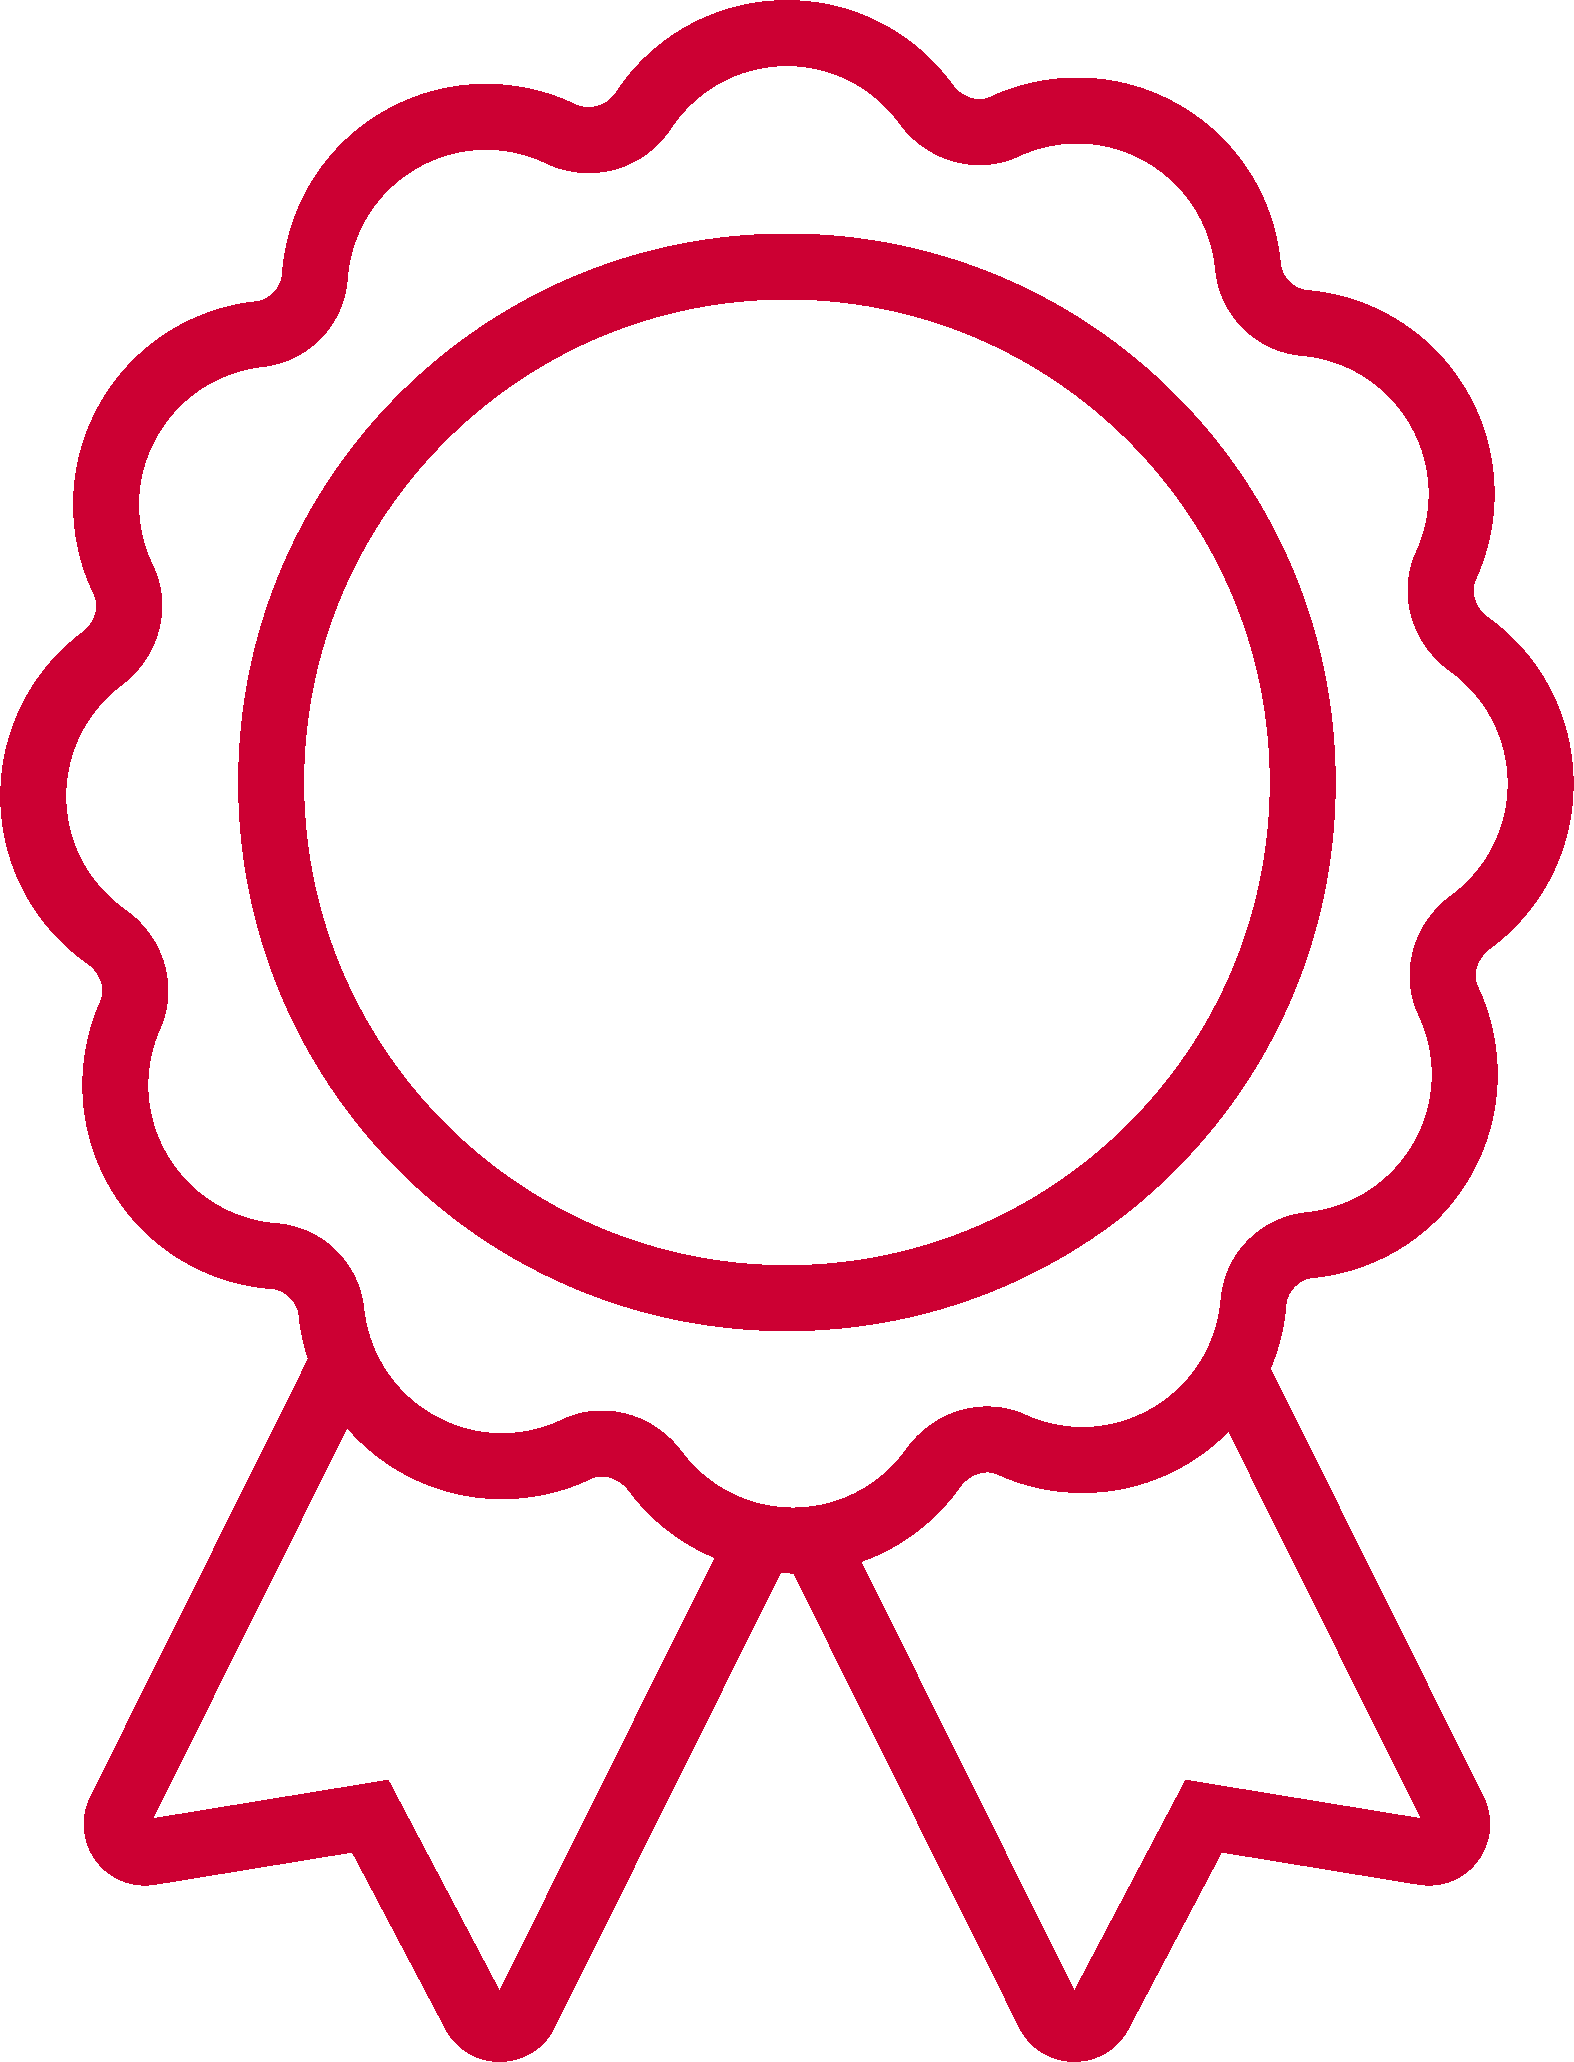 An icon image of and award ribbon